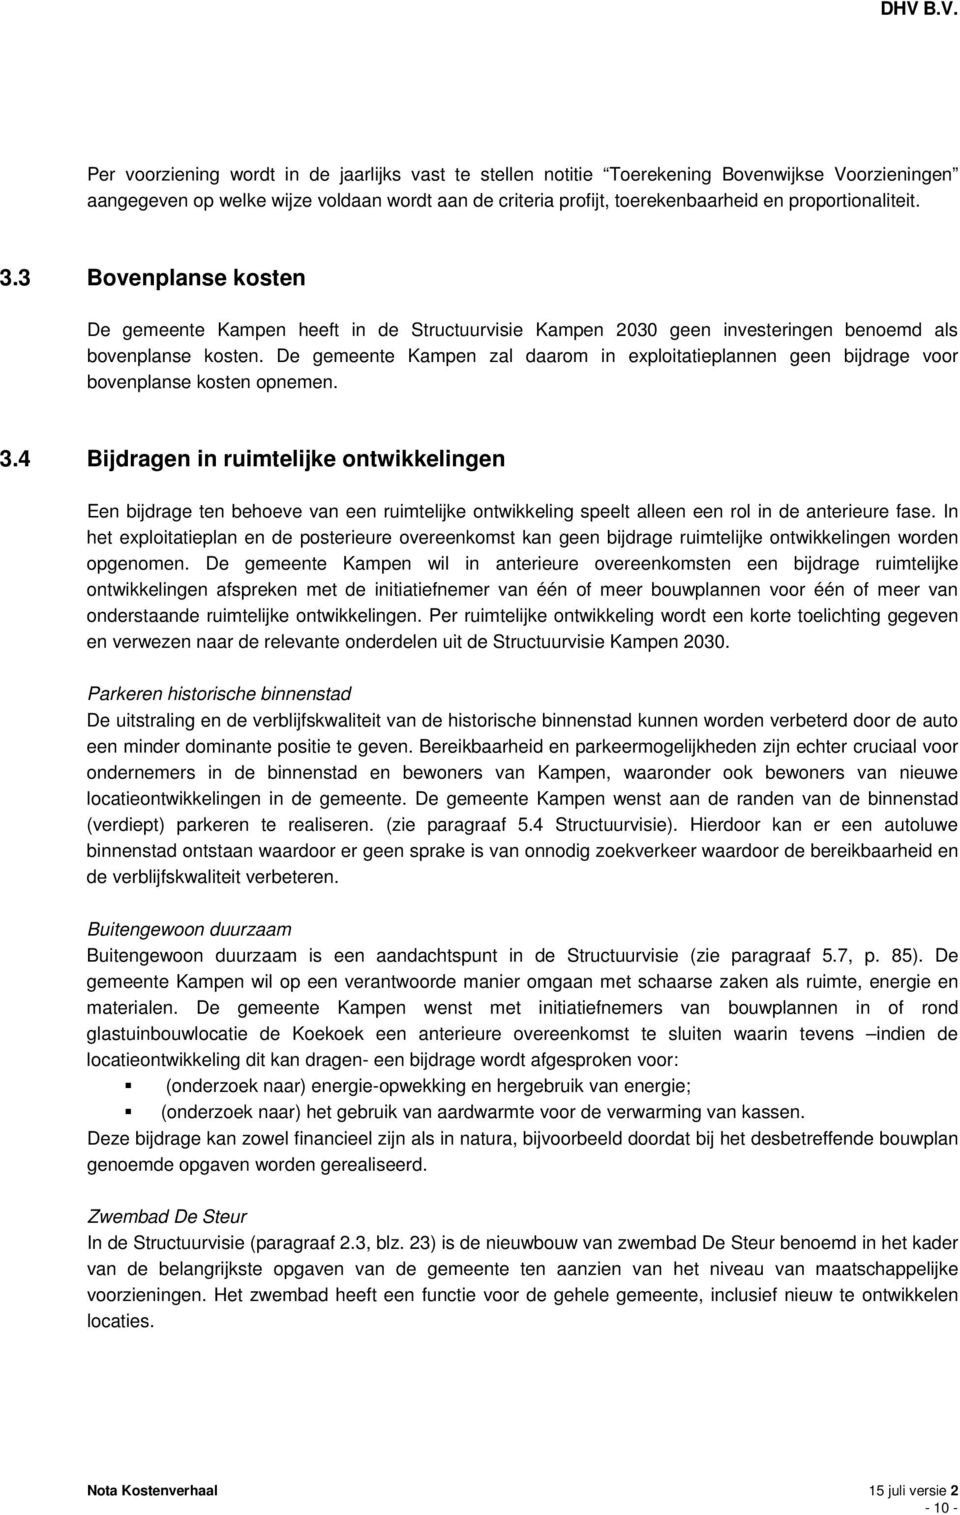 De gemeente Kampen zal daarom in exploitatieplannen geen bijdrage voor bovenplanse kosten opnemen. 3.